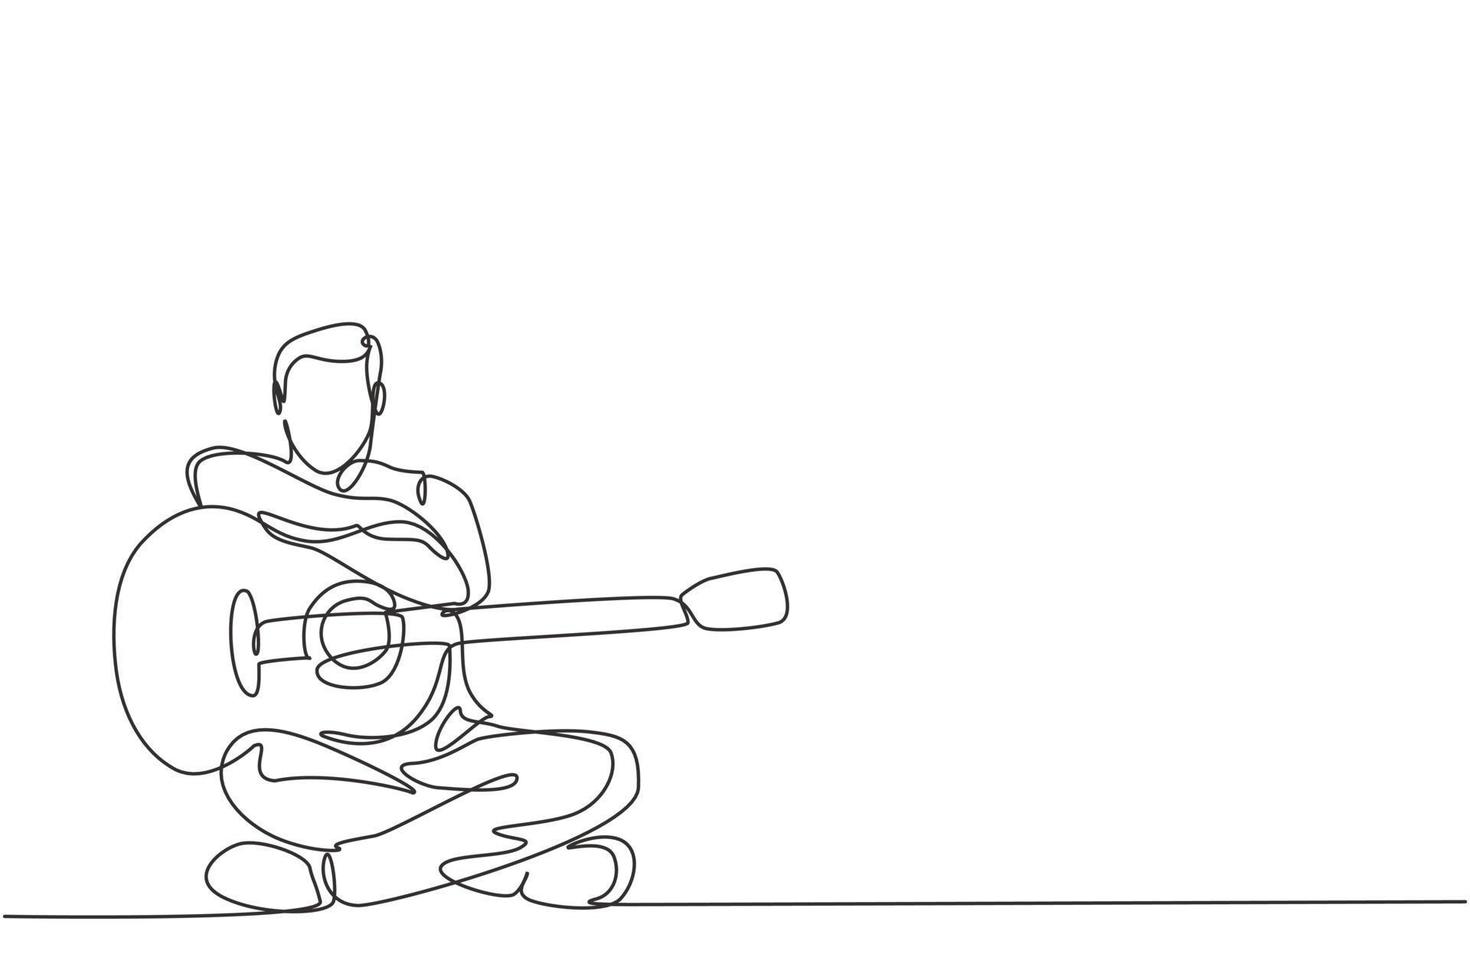 un dessin au trait continu d'un jeune guitariste masculin heureux posant après avoir joué de la guitare acoustique. Musicien dynamique artiste performance concept graphique à ligne unique dessiner illustration vectorielle vecteur